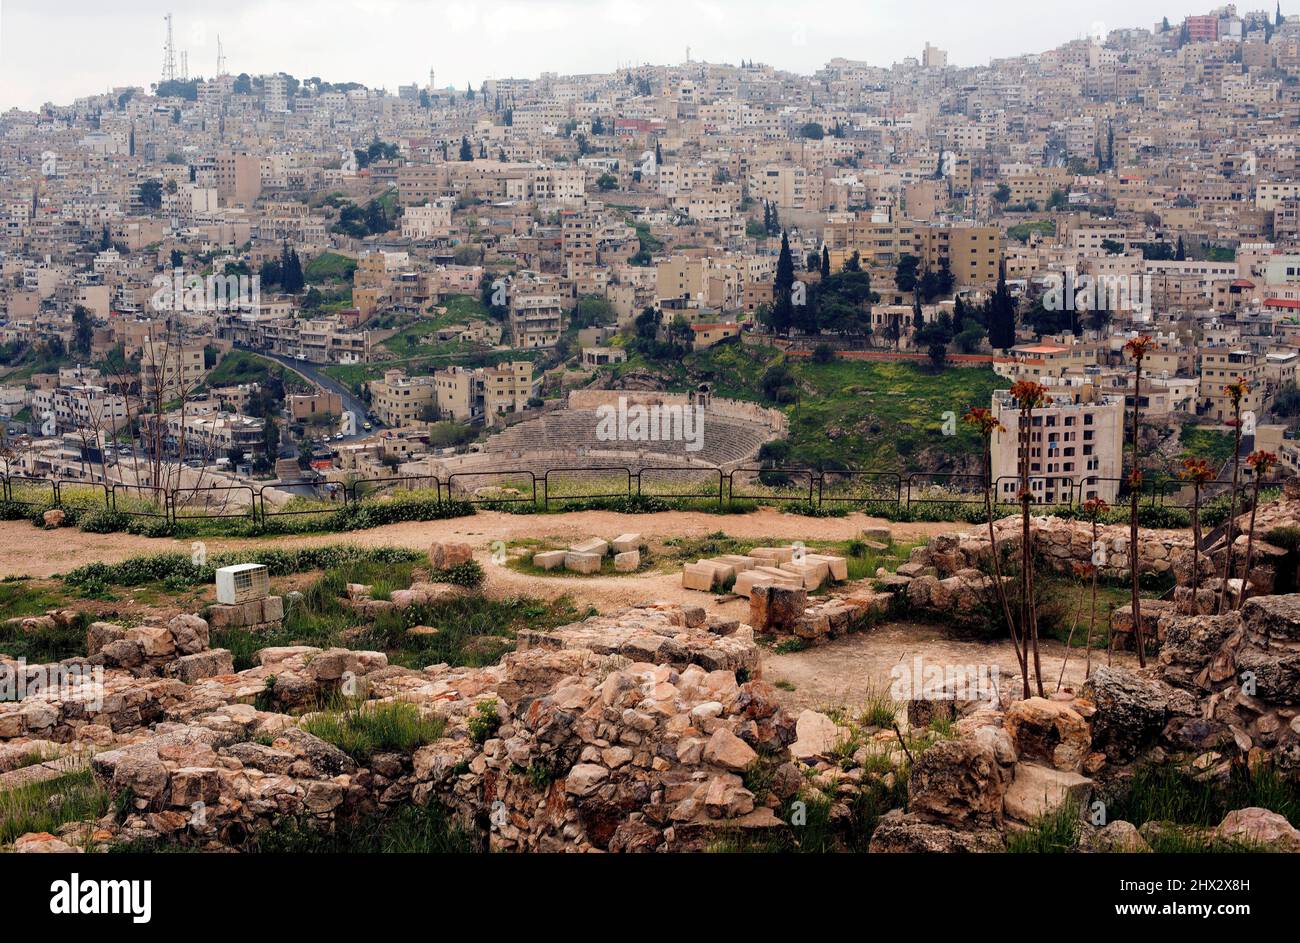 Ammán (capital de Jordania), vista panorámica de la Ciudadela con restos. Foto de stock